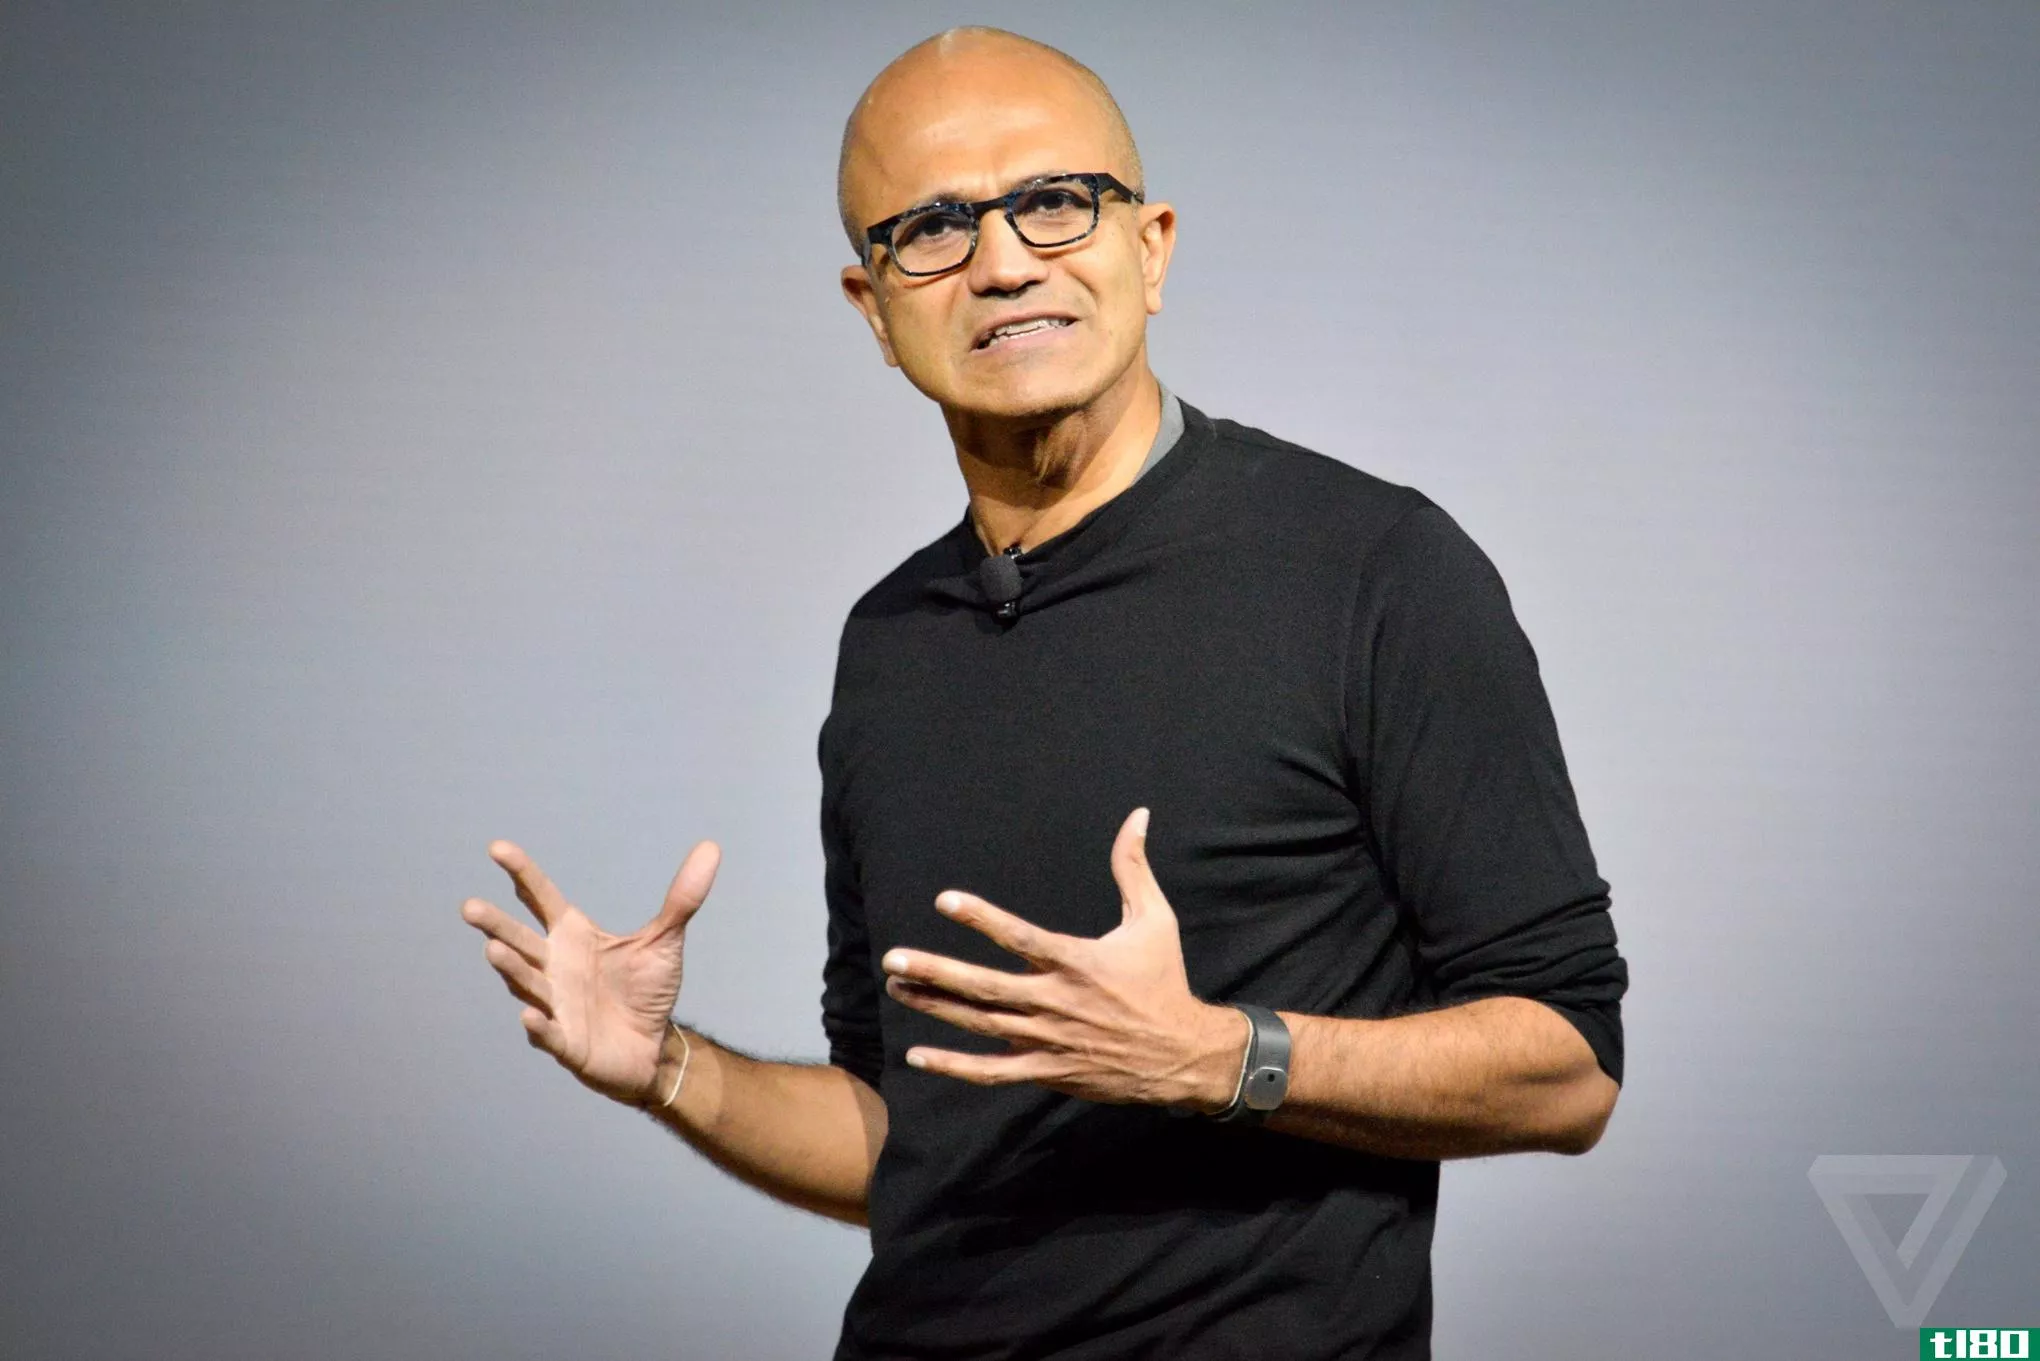 微软首席执行官萨蒂亚纳德拉正在写一本名为《点击刷新》的书